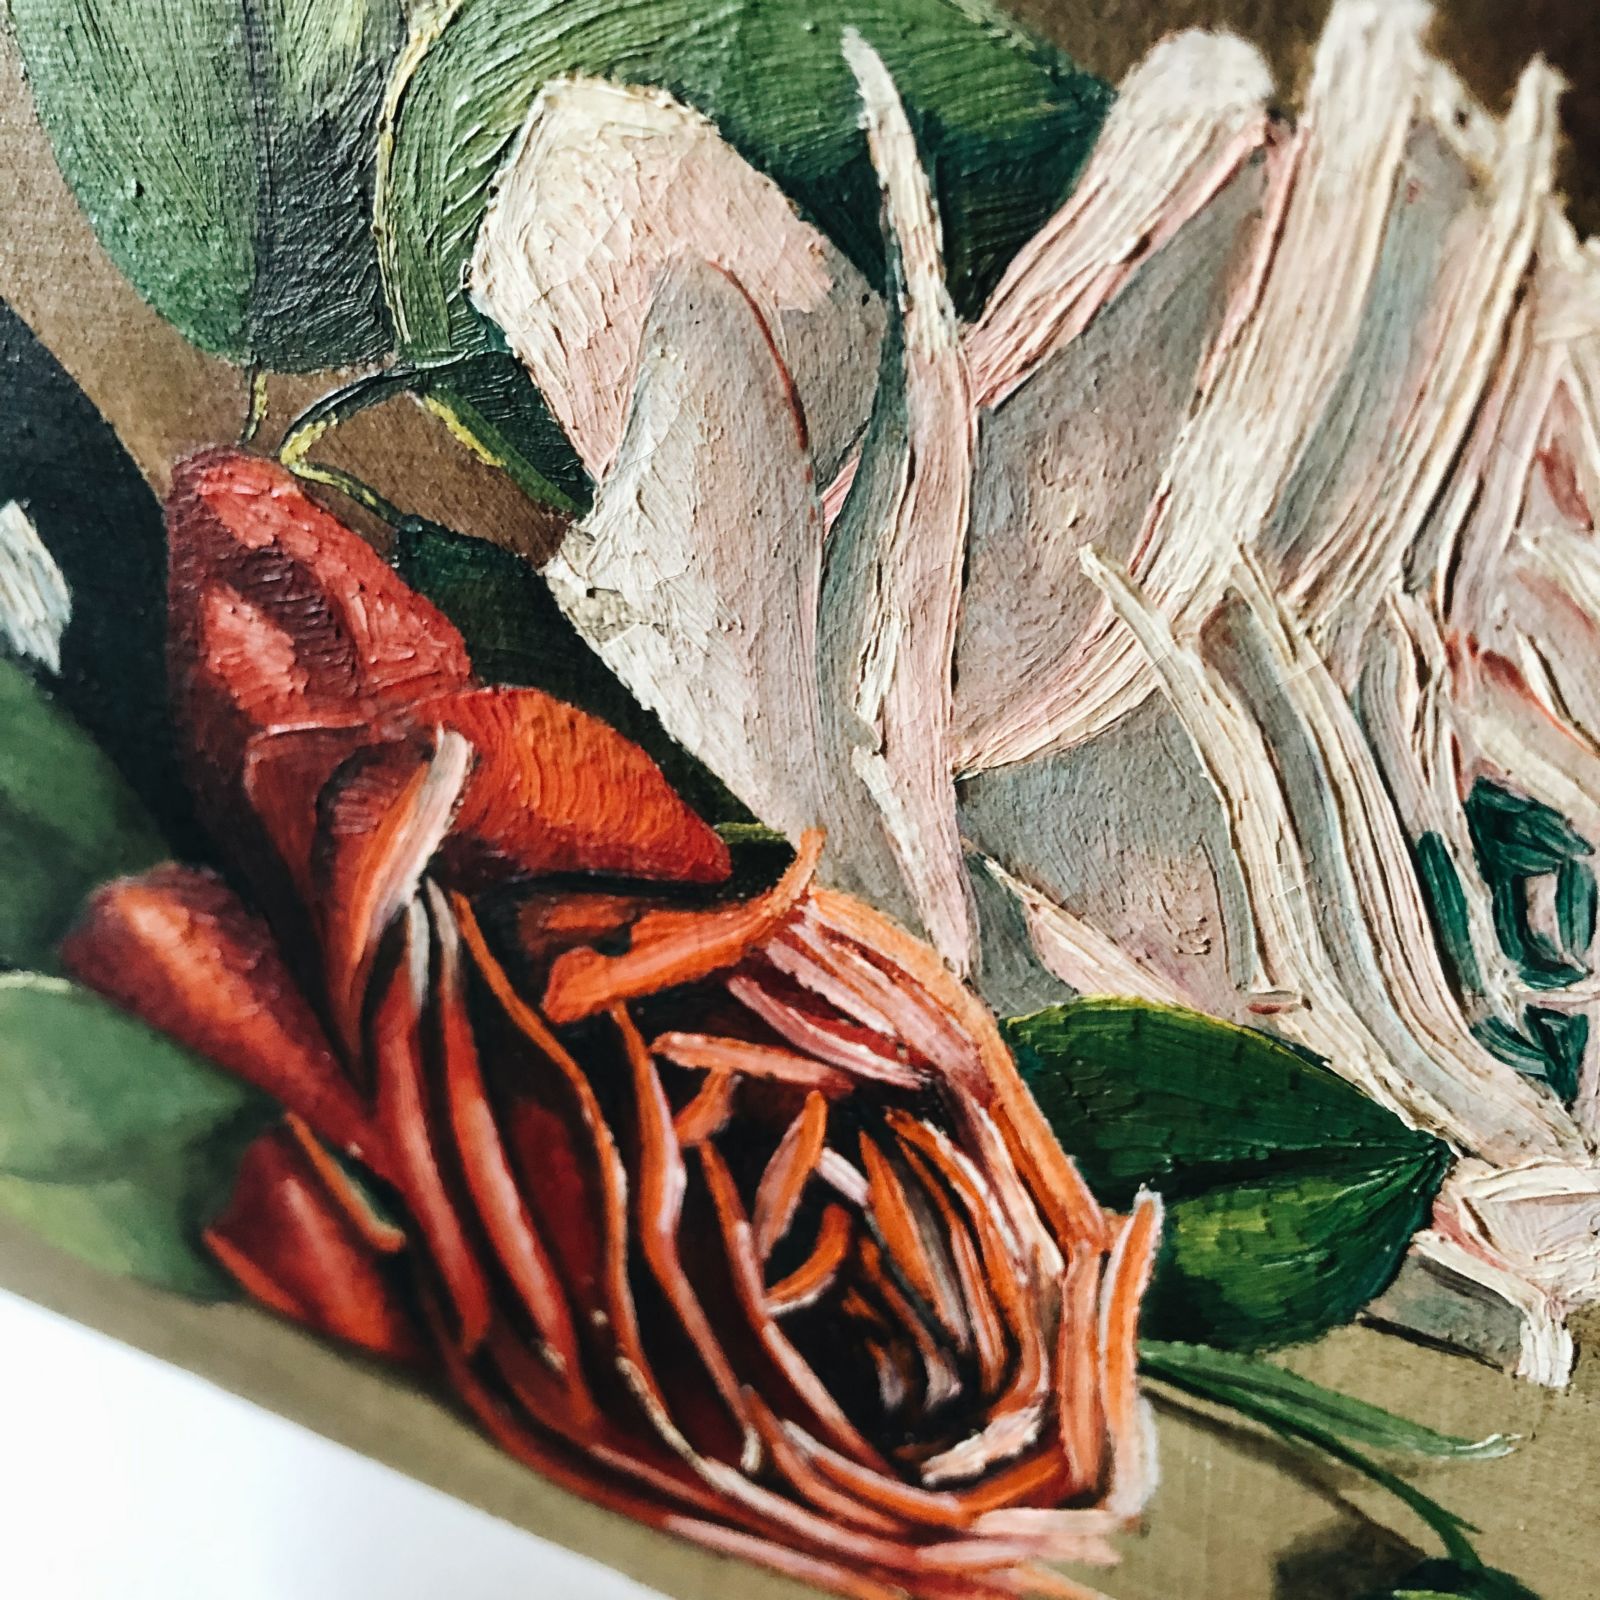 Peinture roses anciennes sur toile